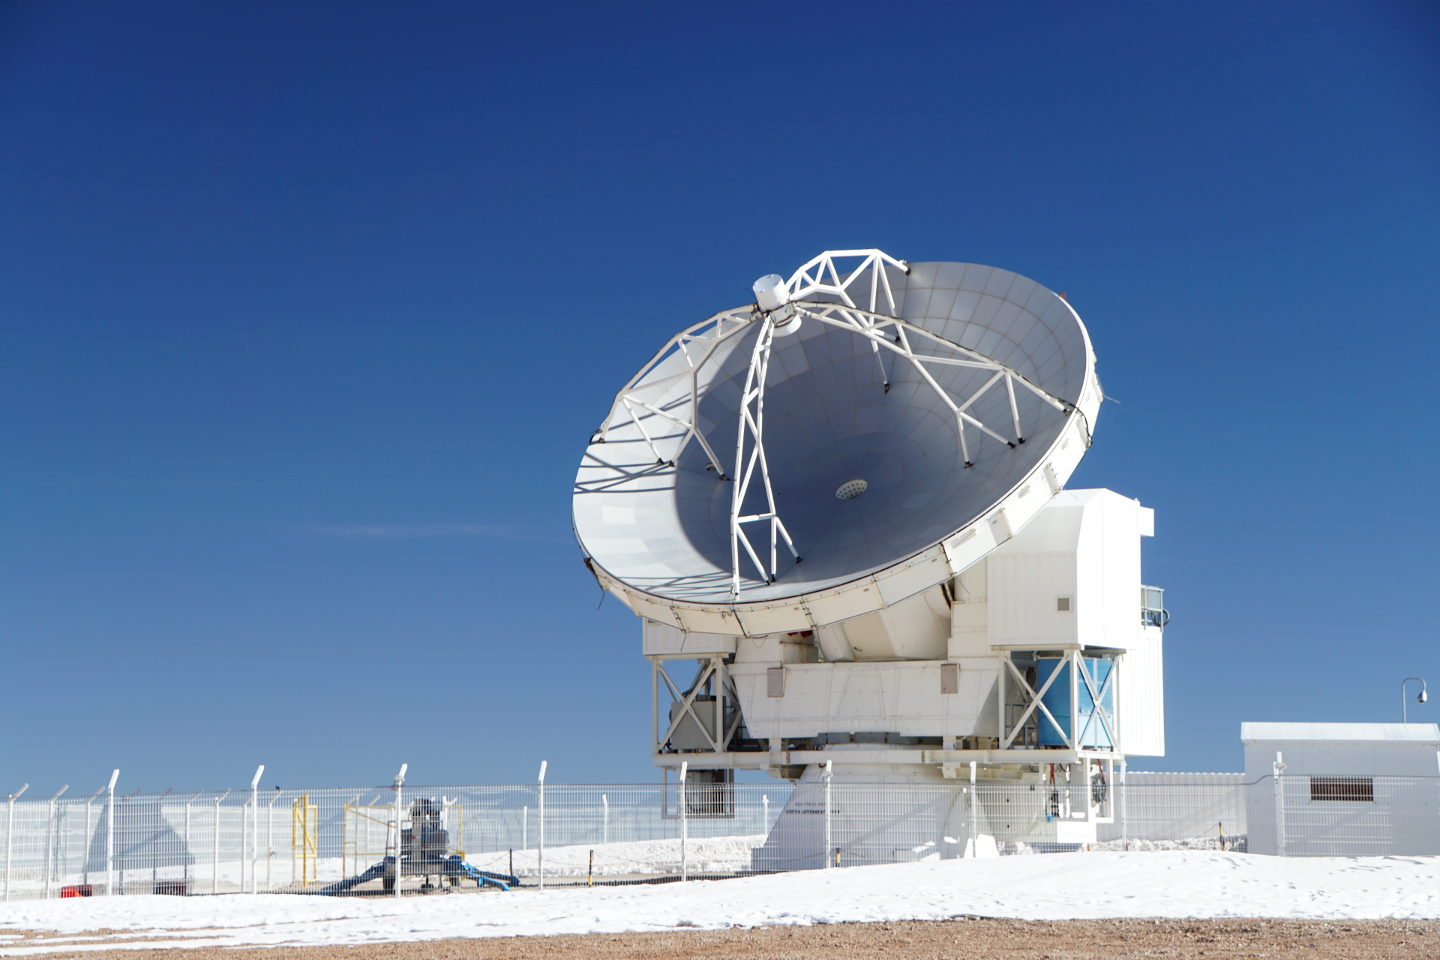 Das APEX Teleskop im Winter